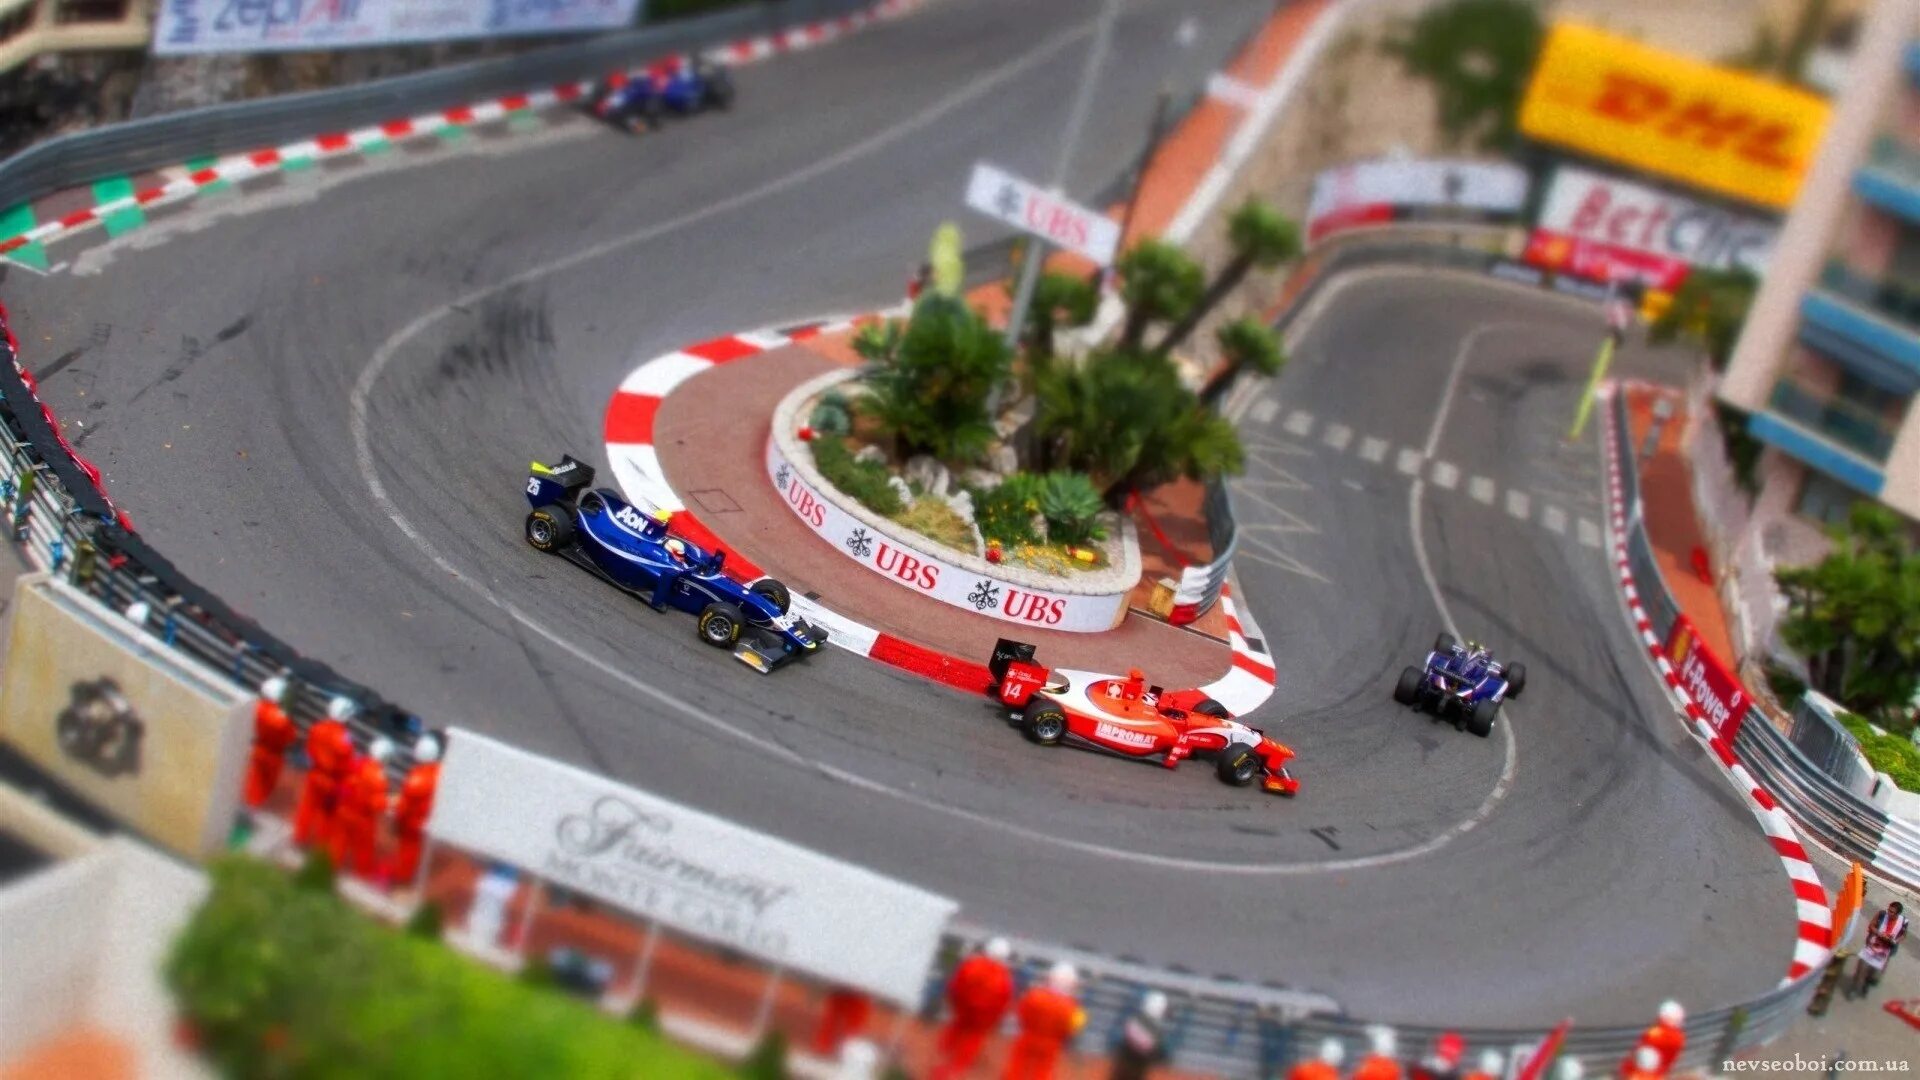 Monaco f1 circuit. F1 Monaco 16 поворот. Monaco f1 track. Монако трасса ф1 питлейн. Кольцевой трек